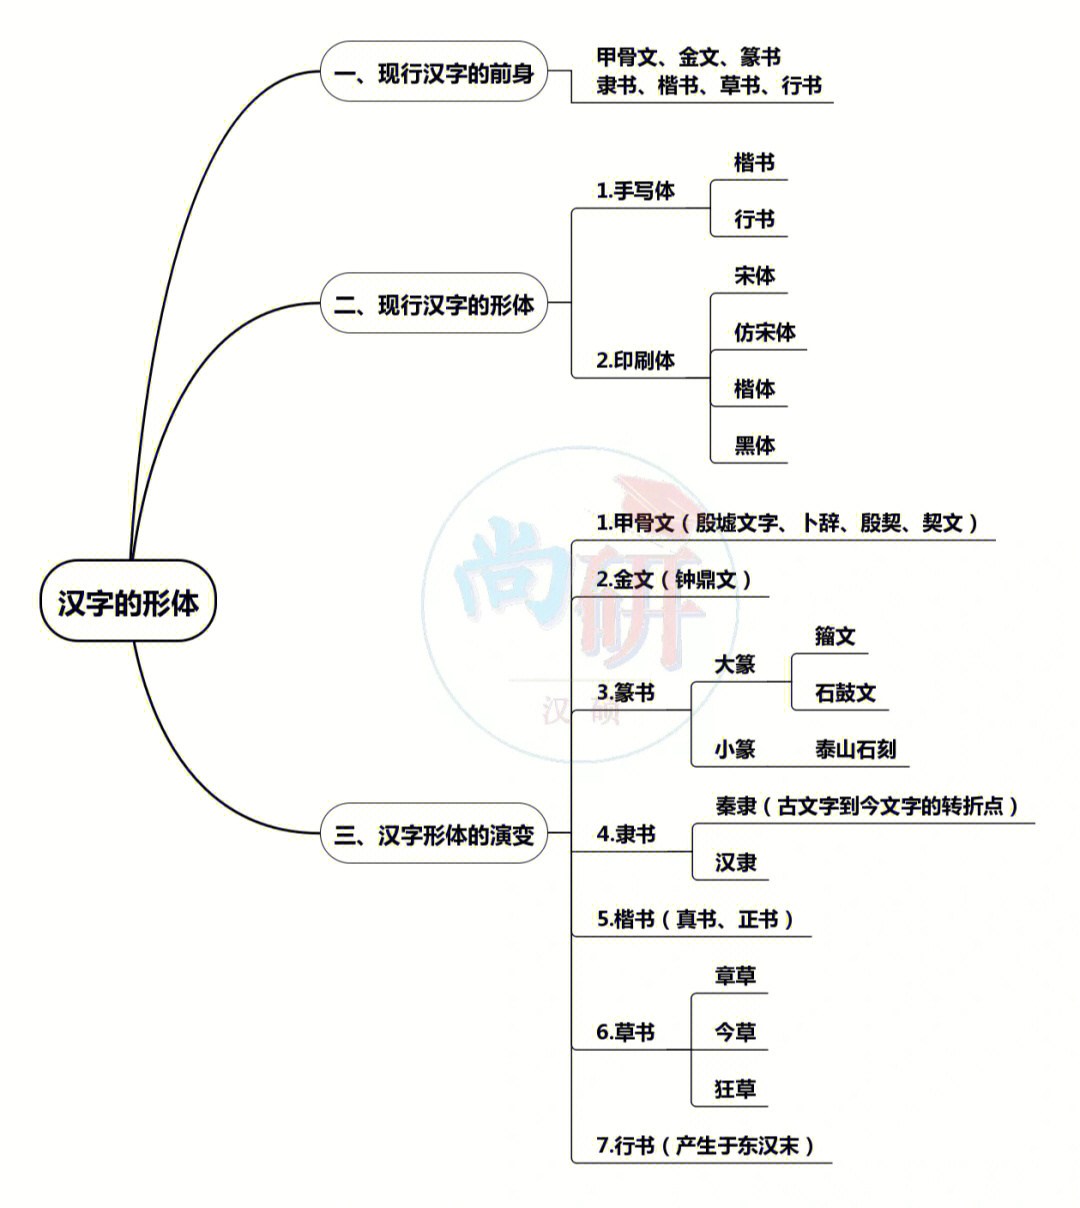 现代汉语文字章节完整版的框架图来了